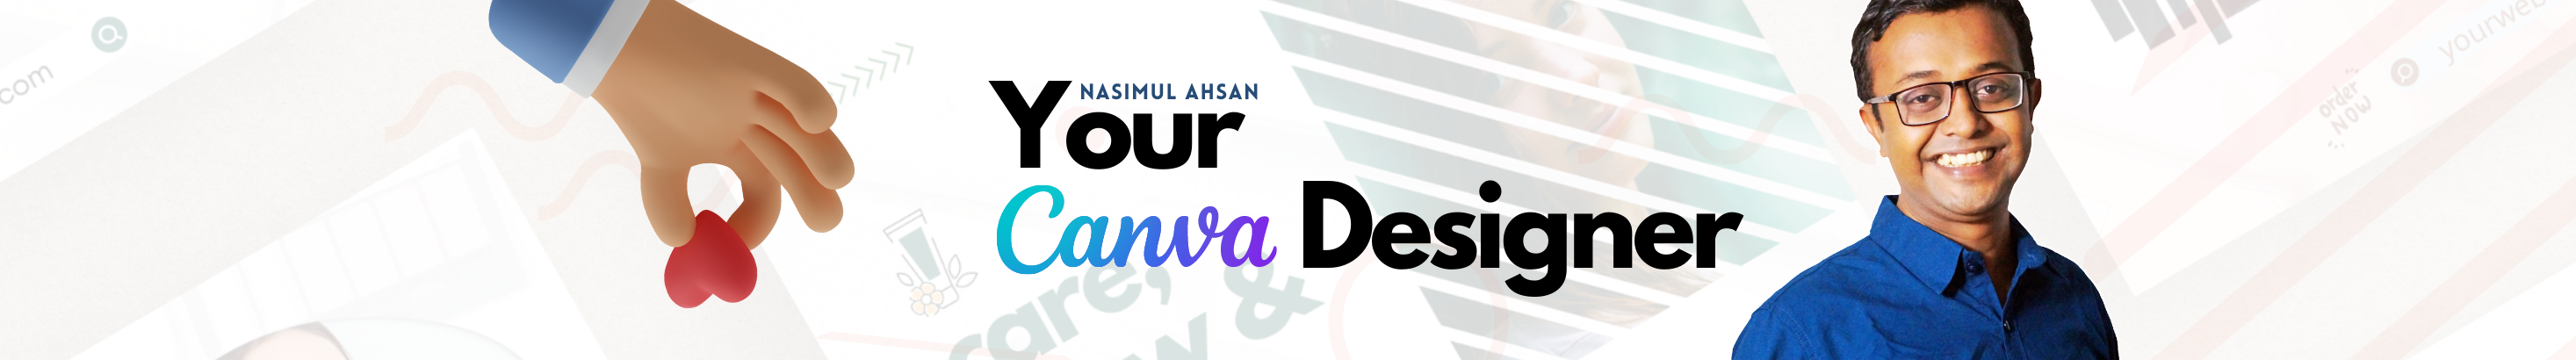 Nasimul Ahsan's profile banner